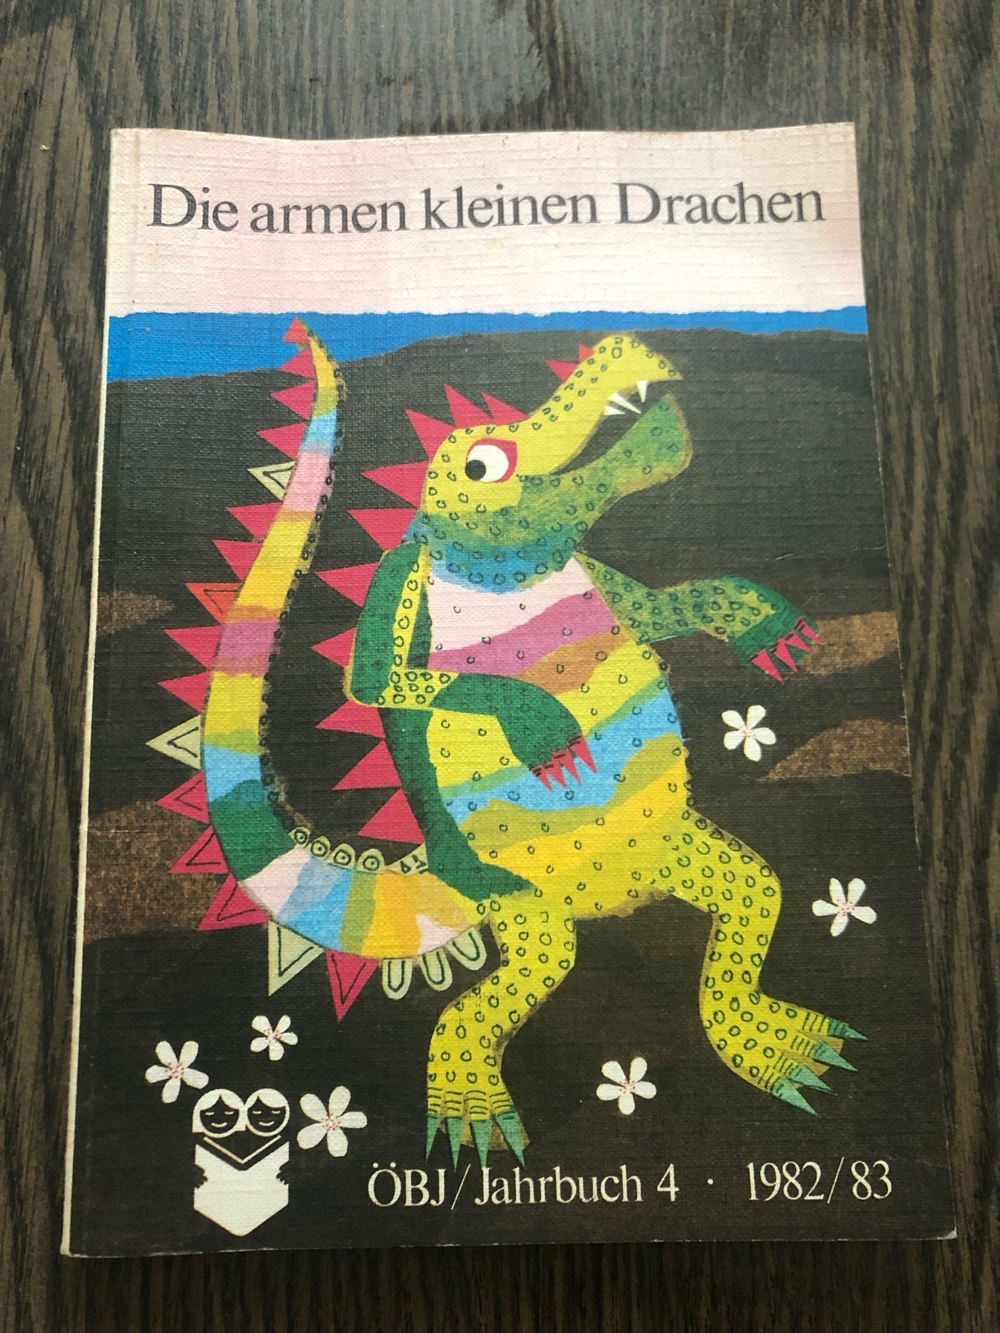 Die armen kleinen Drachen, ÖBJ Jahrbuch 82/83